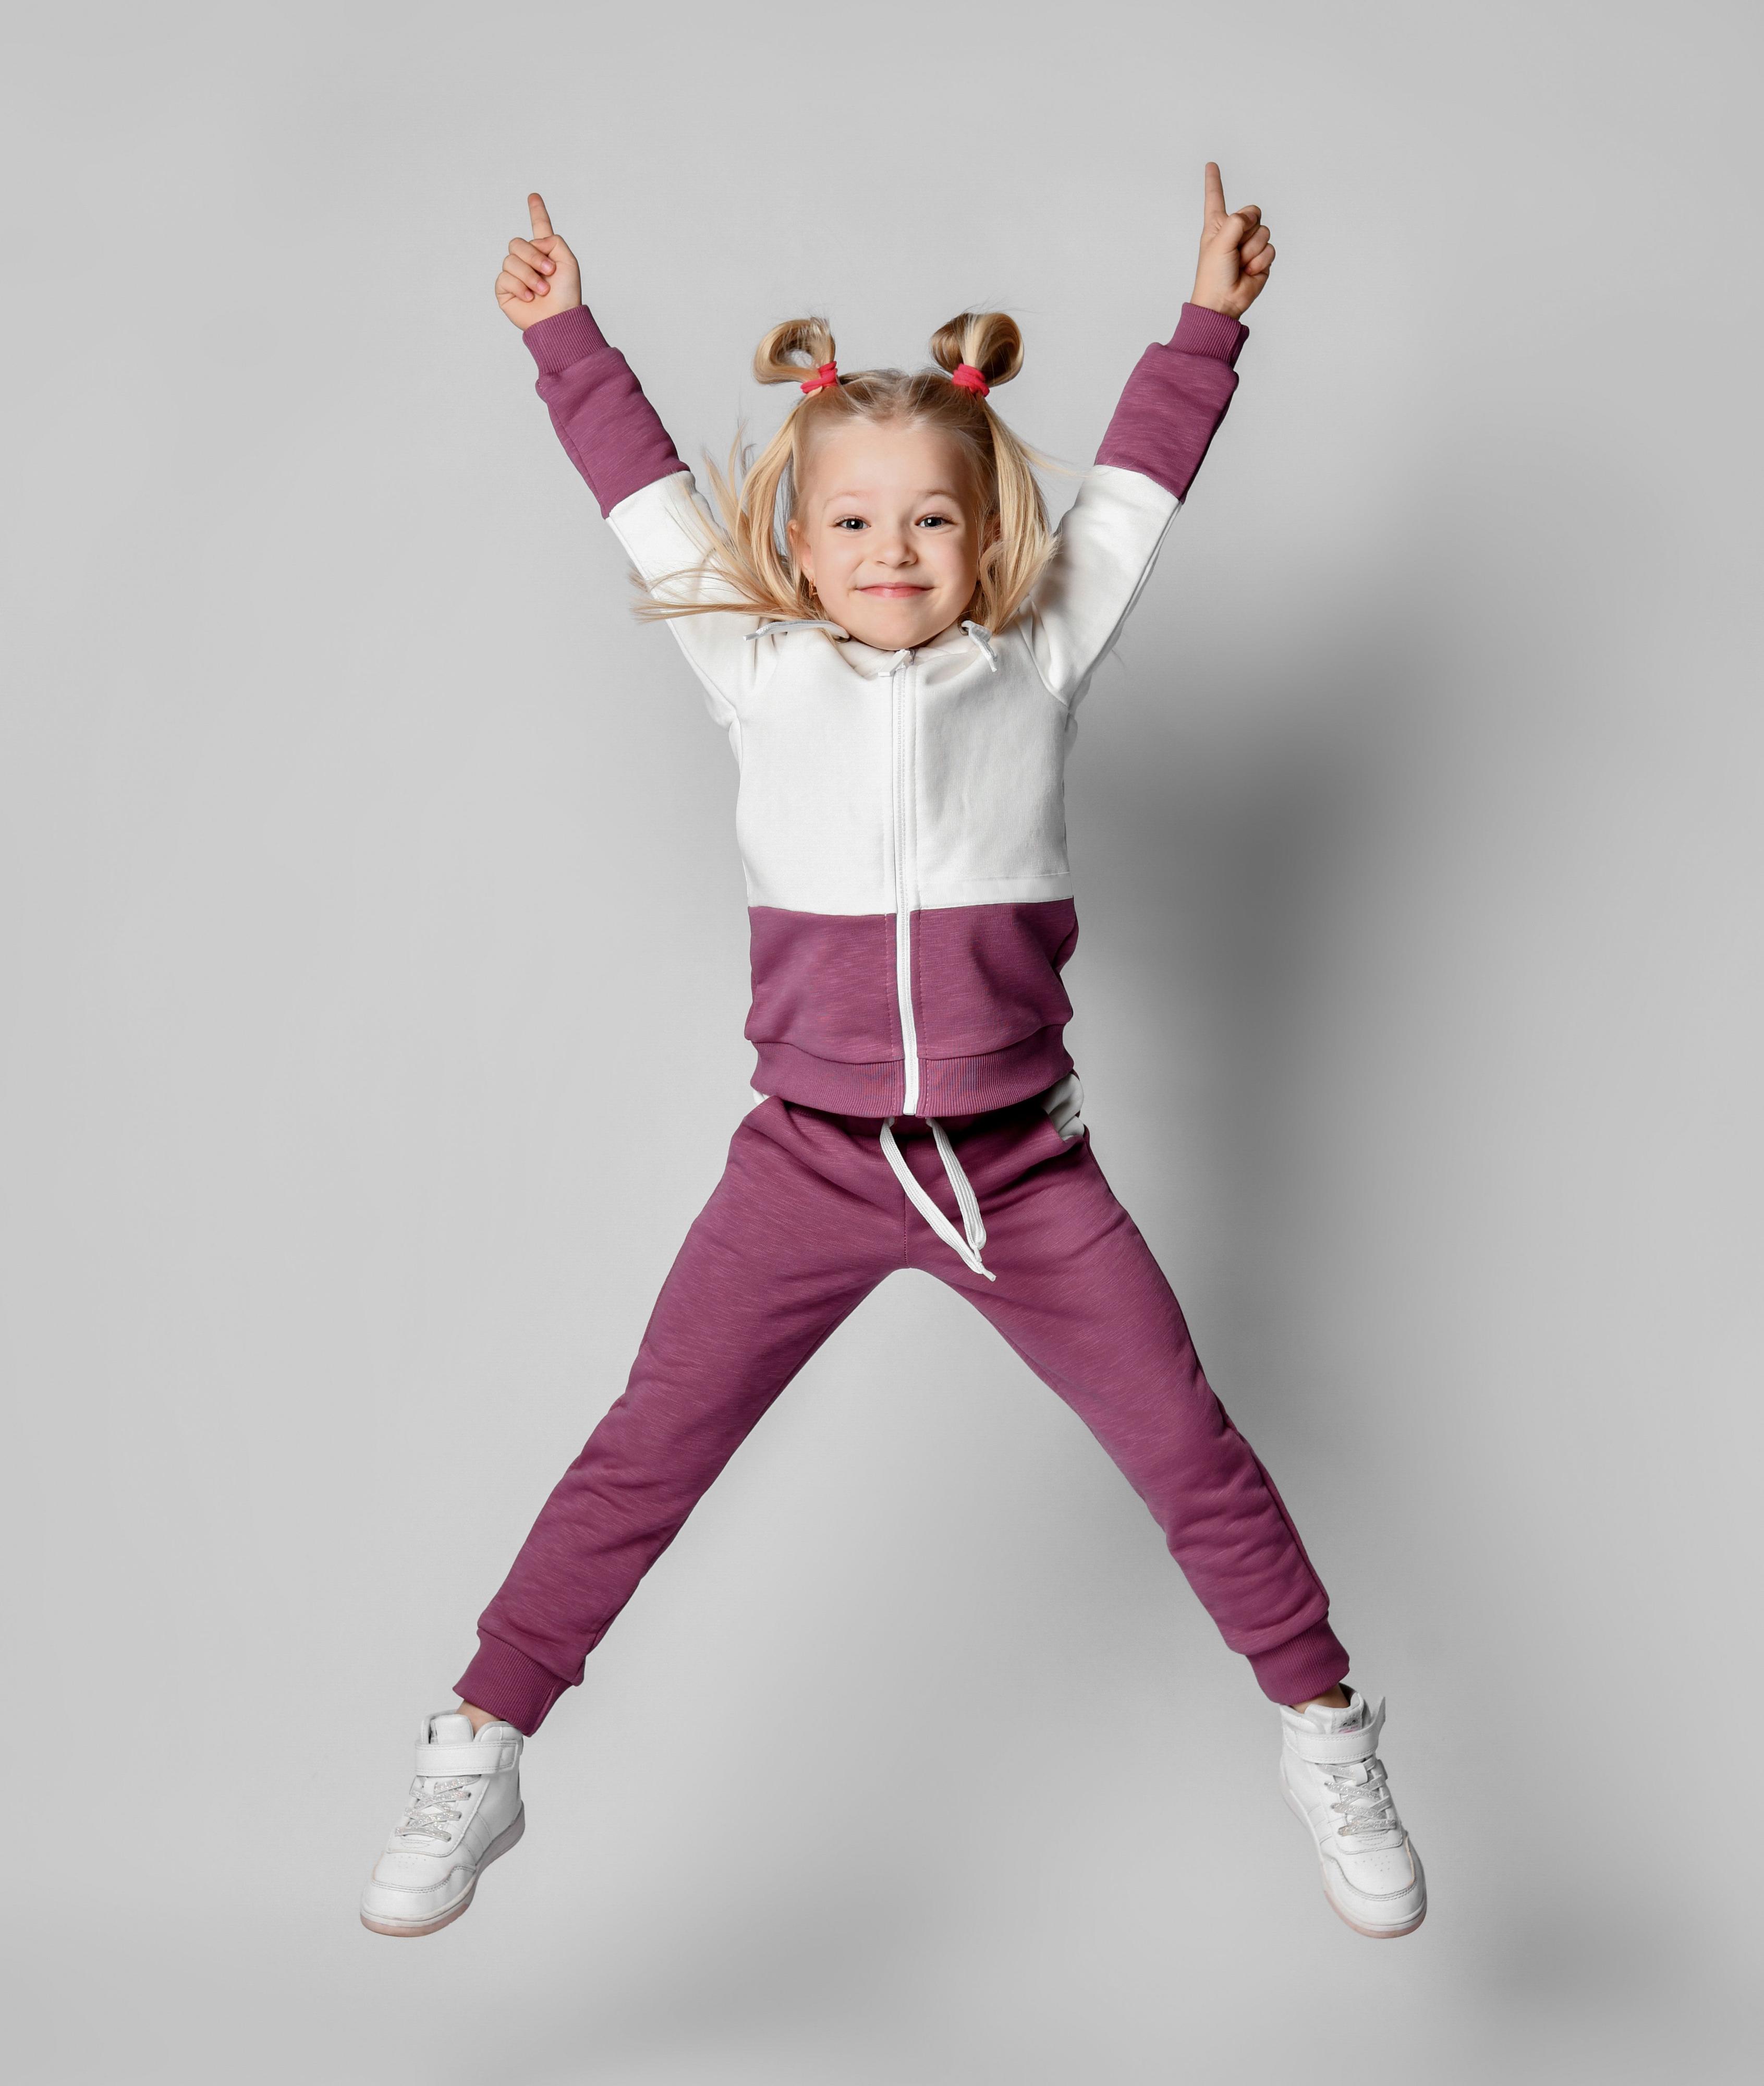 Kleines Mädchen im Jogging-Anzug mit Turnschuhen springt in die Luft